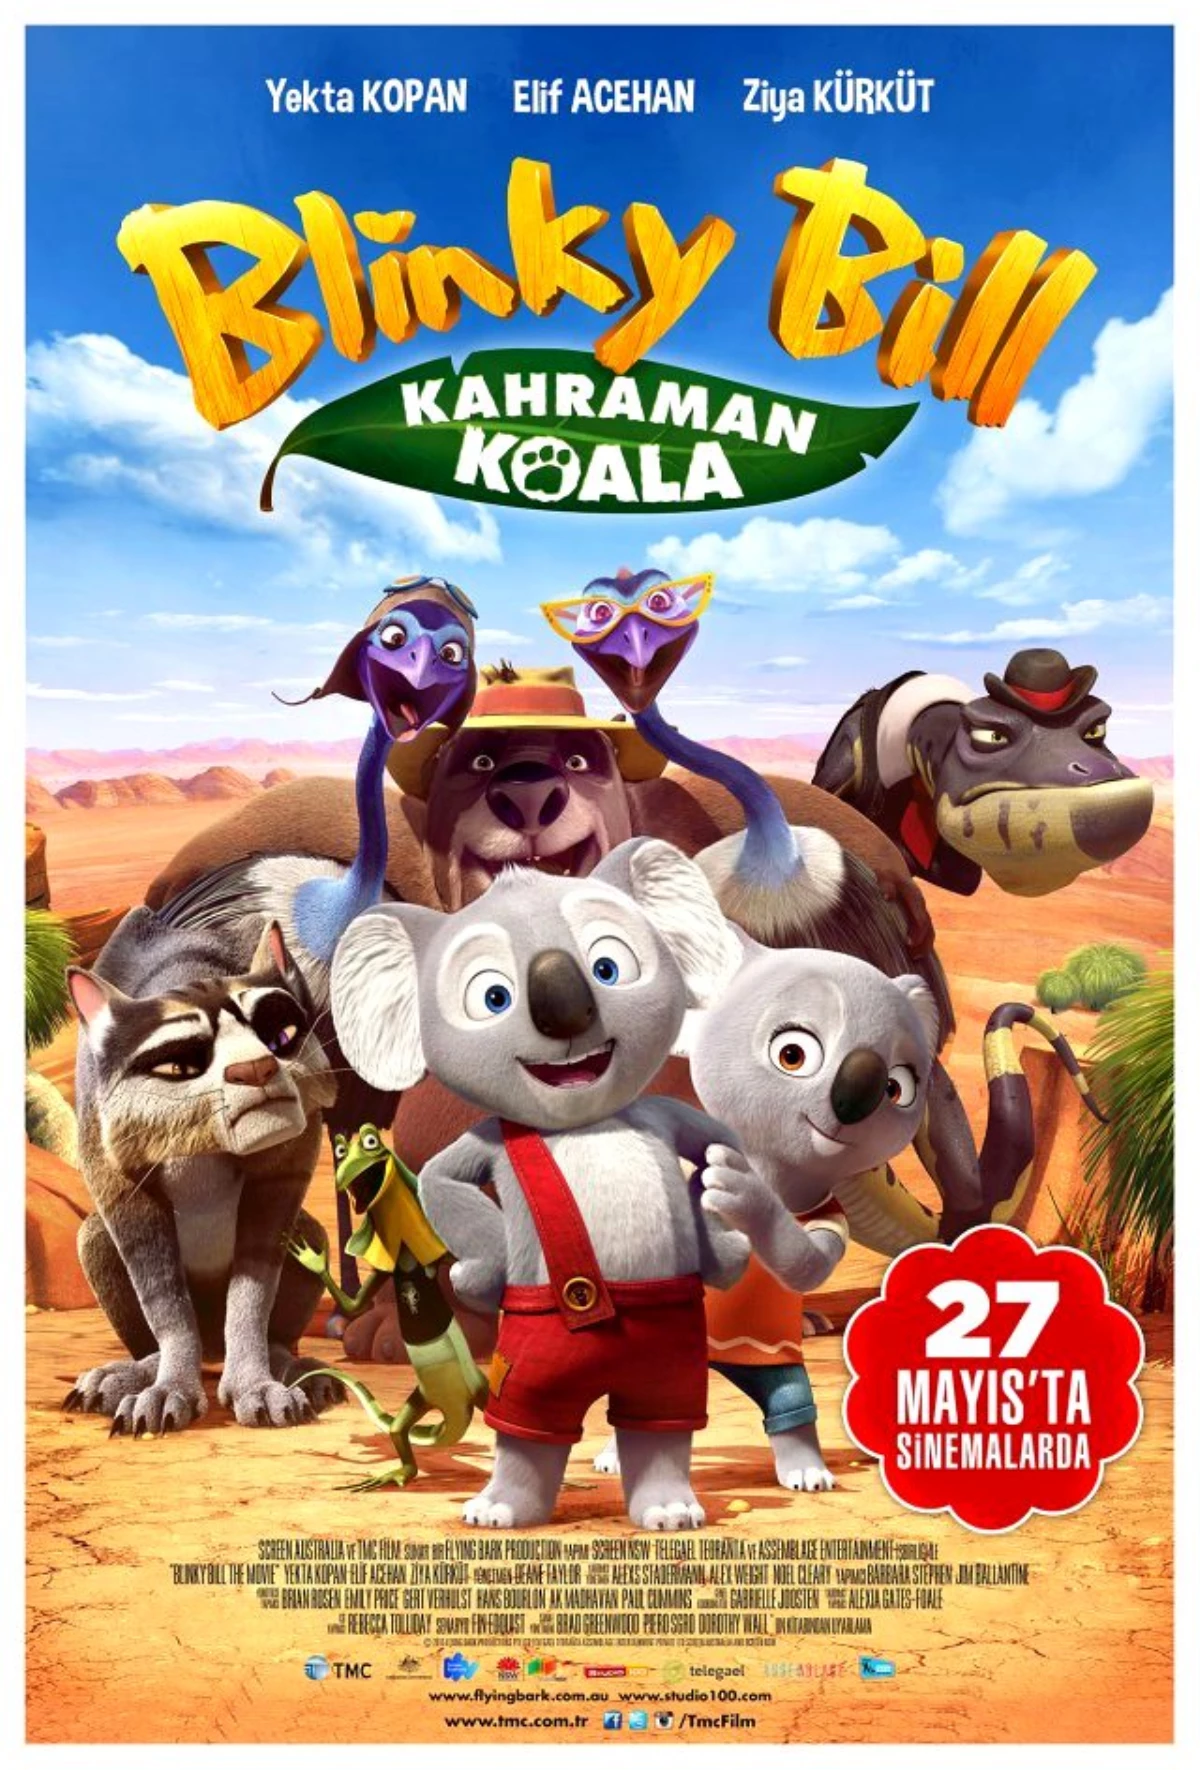 Kahraman Koala Blınky Bıll Cuma Günü Vizyonda